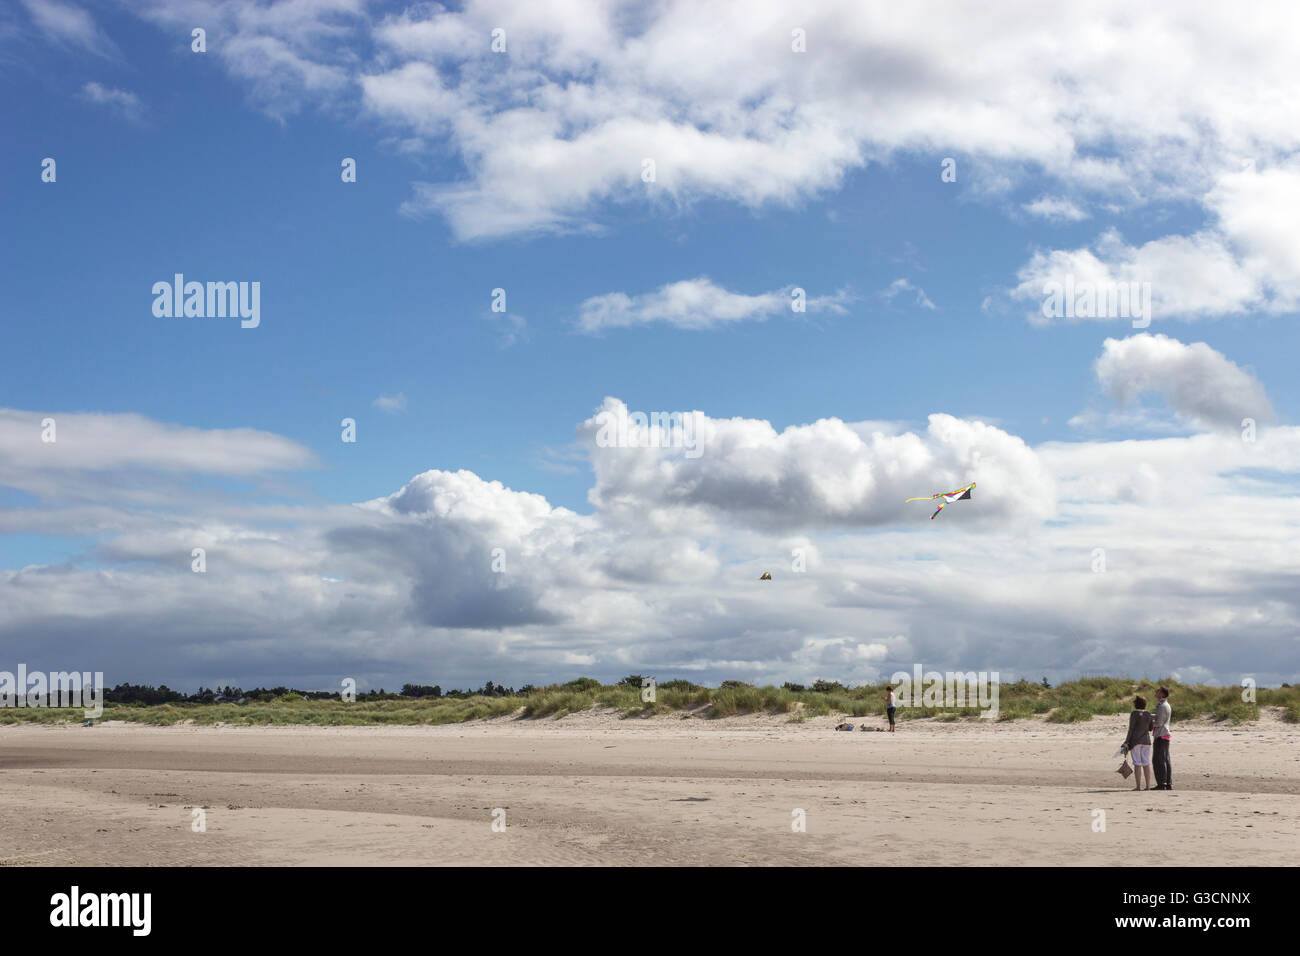 Schottland, Highlands, Nairn, Menschen, die am Strand spazieren, Abdrücke im Sand, Grasgebiet, schottische Landschaft, Strand, blauer Himmel, Fliegende Drachen Stockfoto